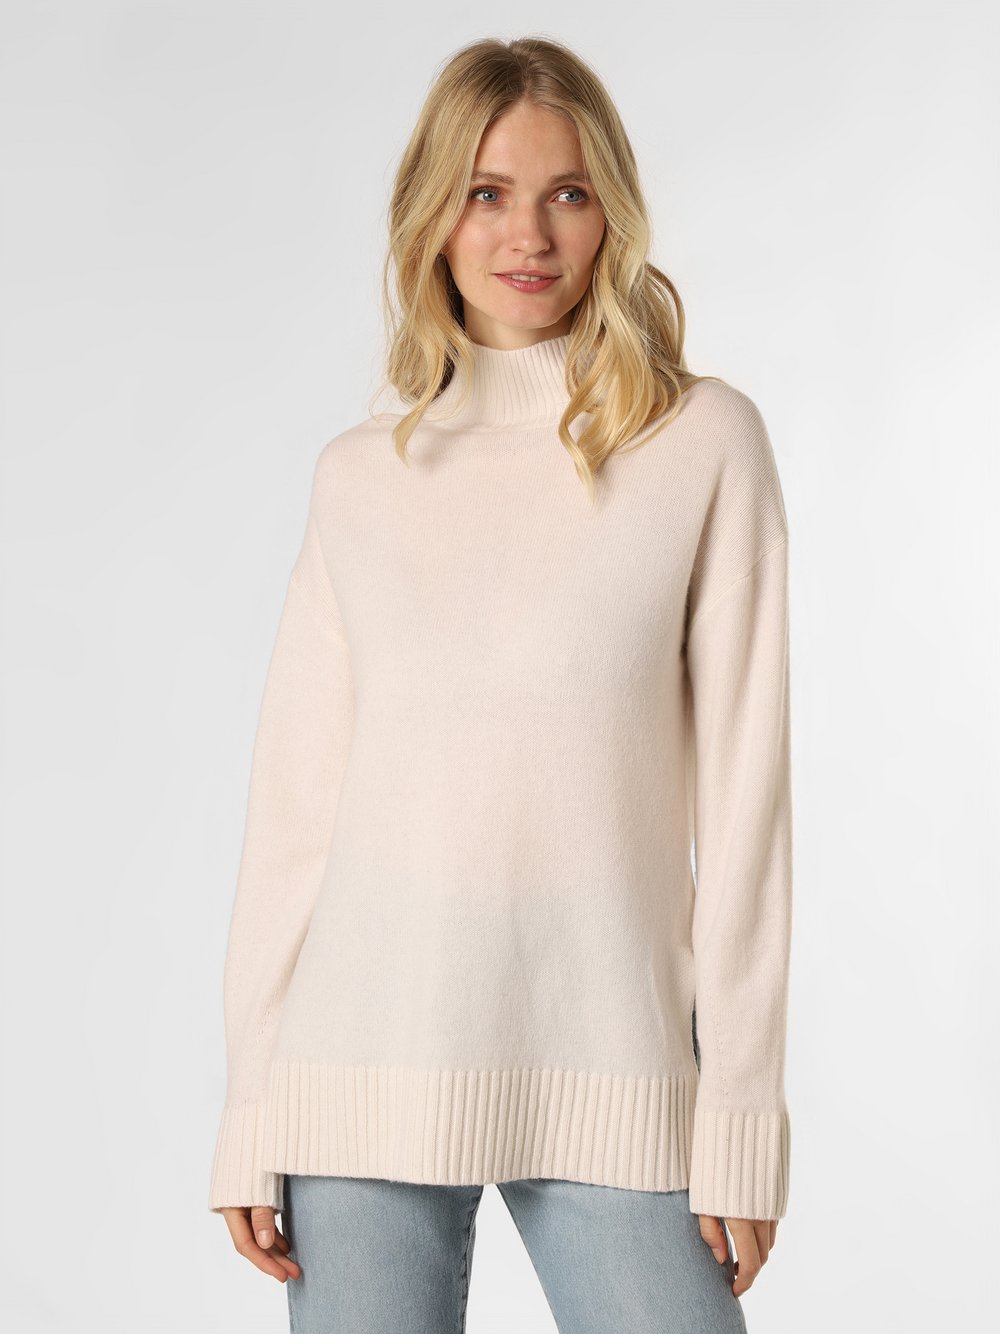 Apriori - Damski sweter z wełny merino, biały|beżowy